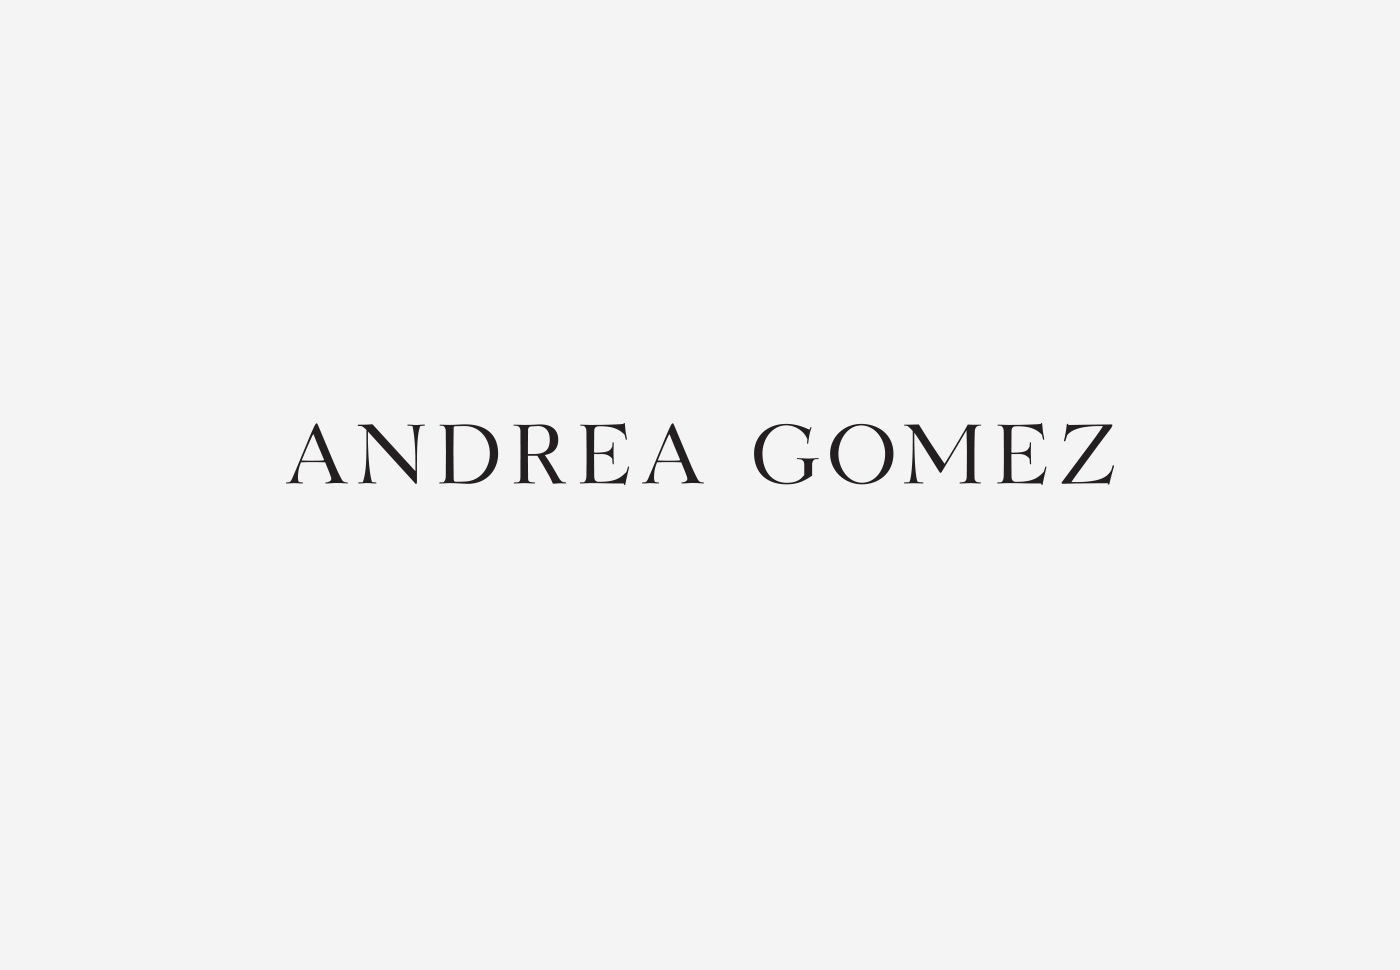 Andrea Gomez – Visual identity